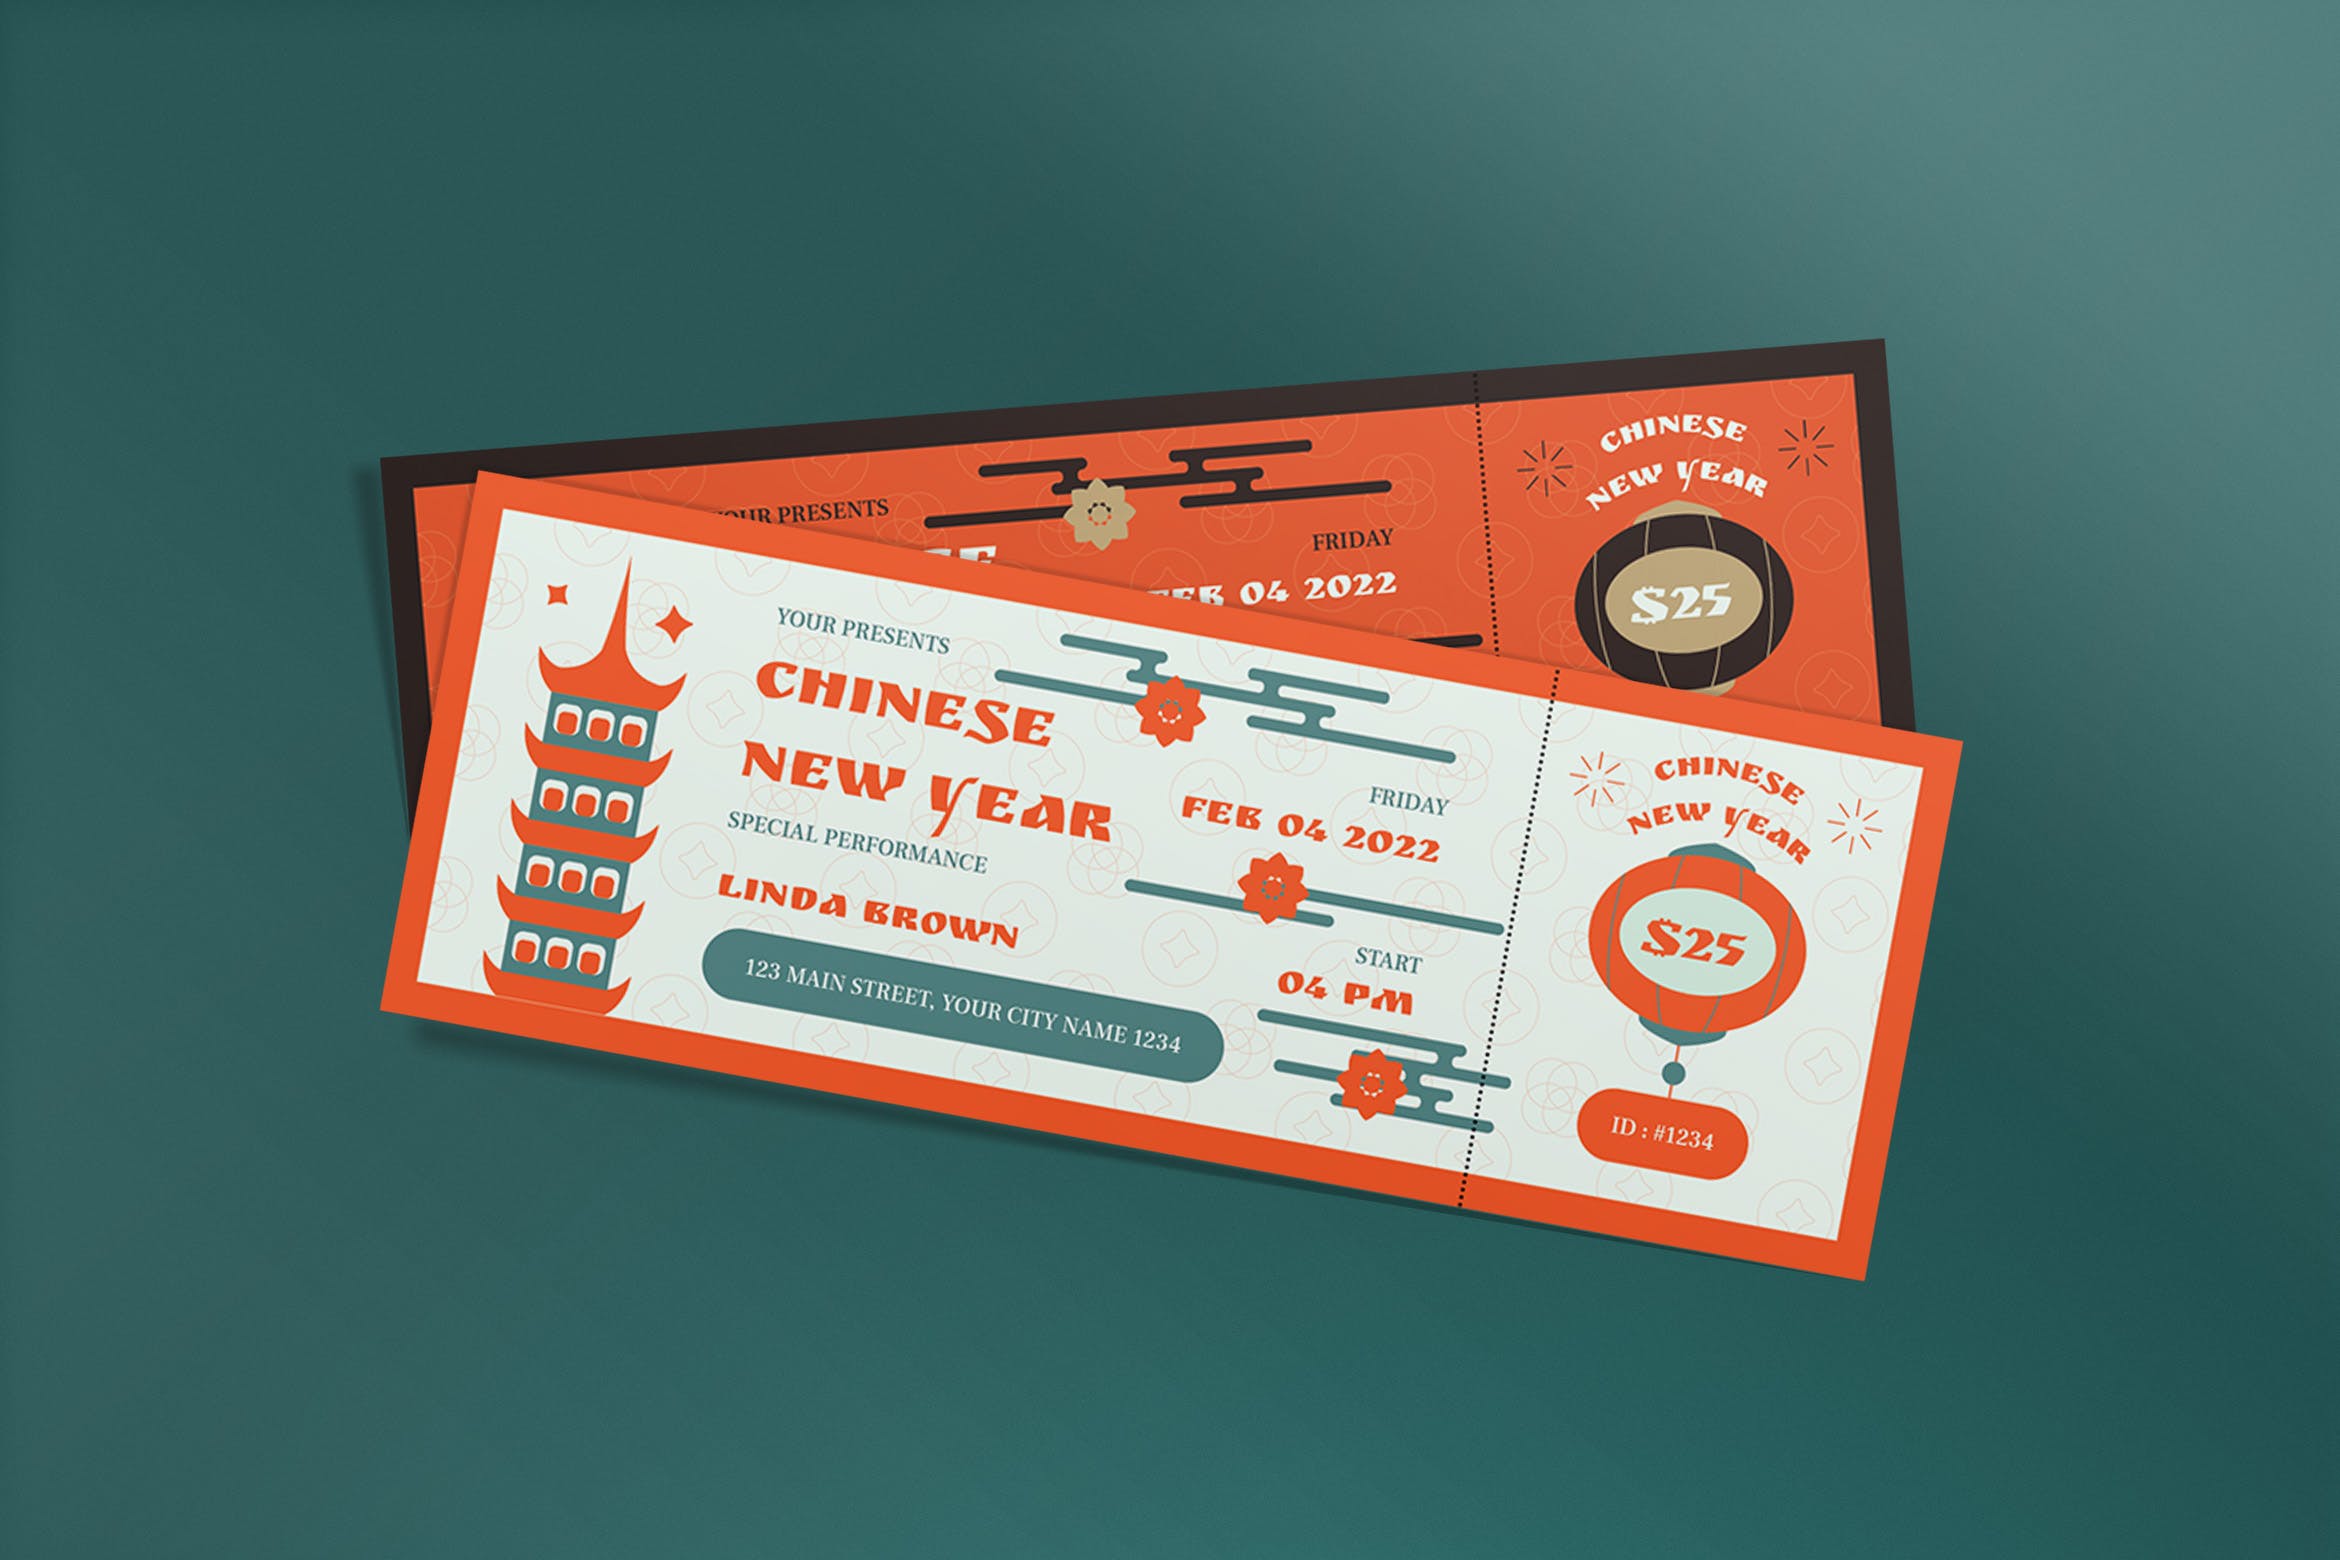 新年节日活动门票票券模板 Chinese New Year Ticket 设计素材 第1张